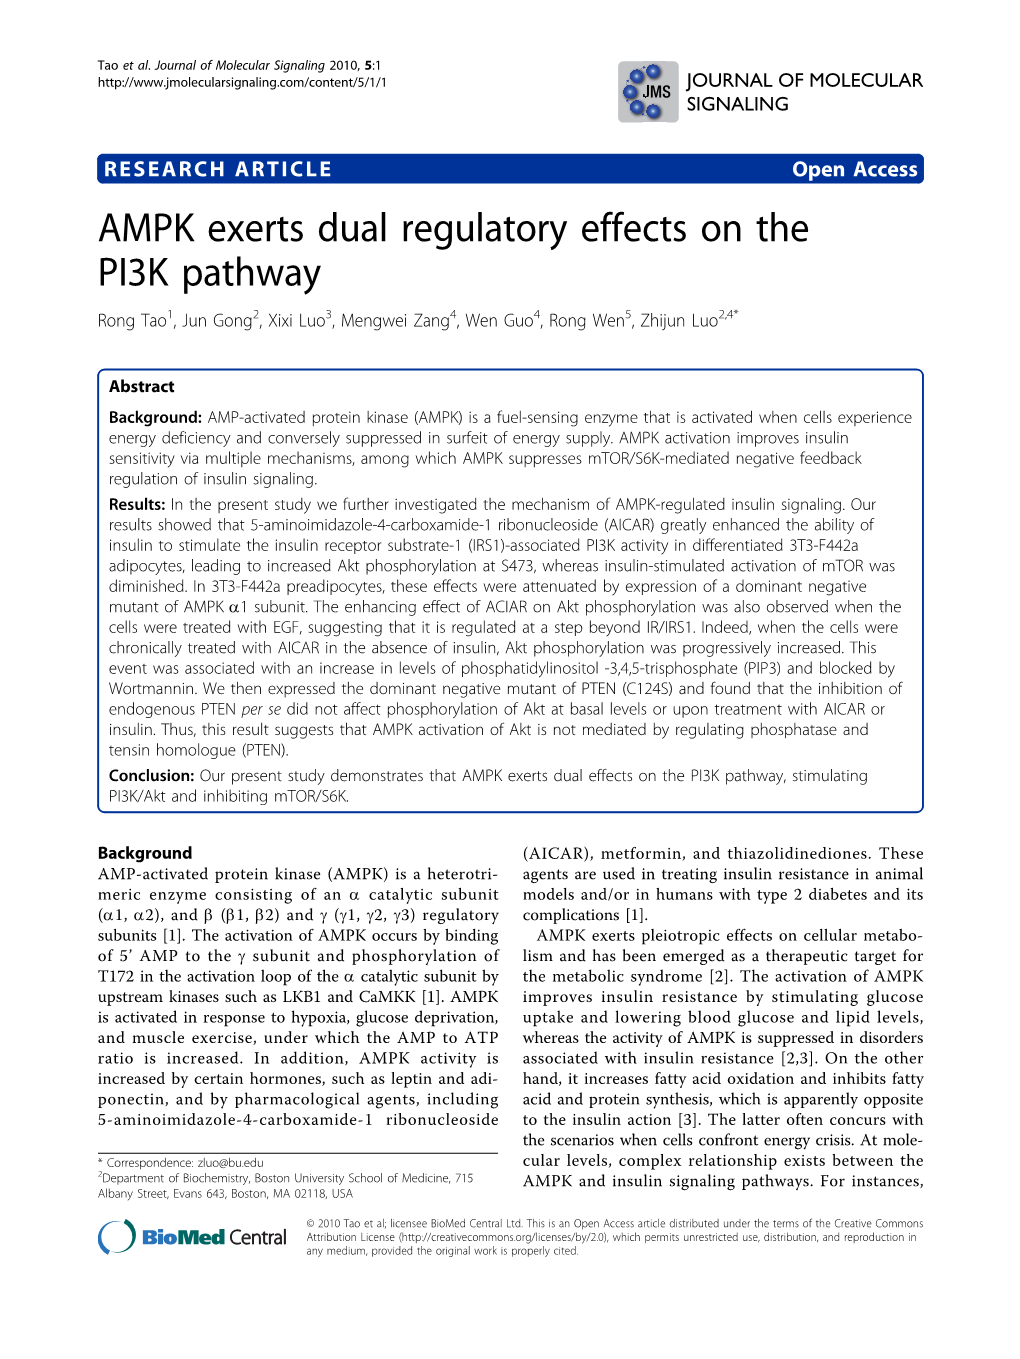 AMPK Exerts Dual Regulatory Effects on the PI3K Pathway Rong Tao1, Jun Gong2, Xixi Luo3, Mengwei Zang4, Wen Guo4, Rong Wen5, Zhijun Luo2,4*